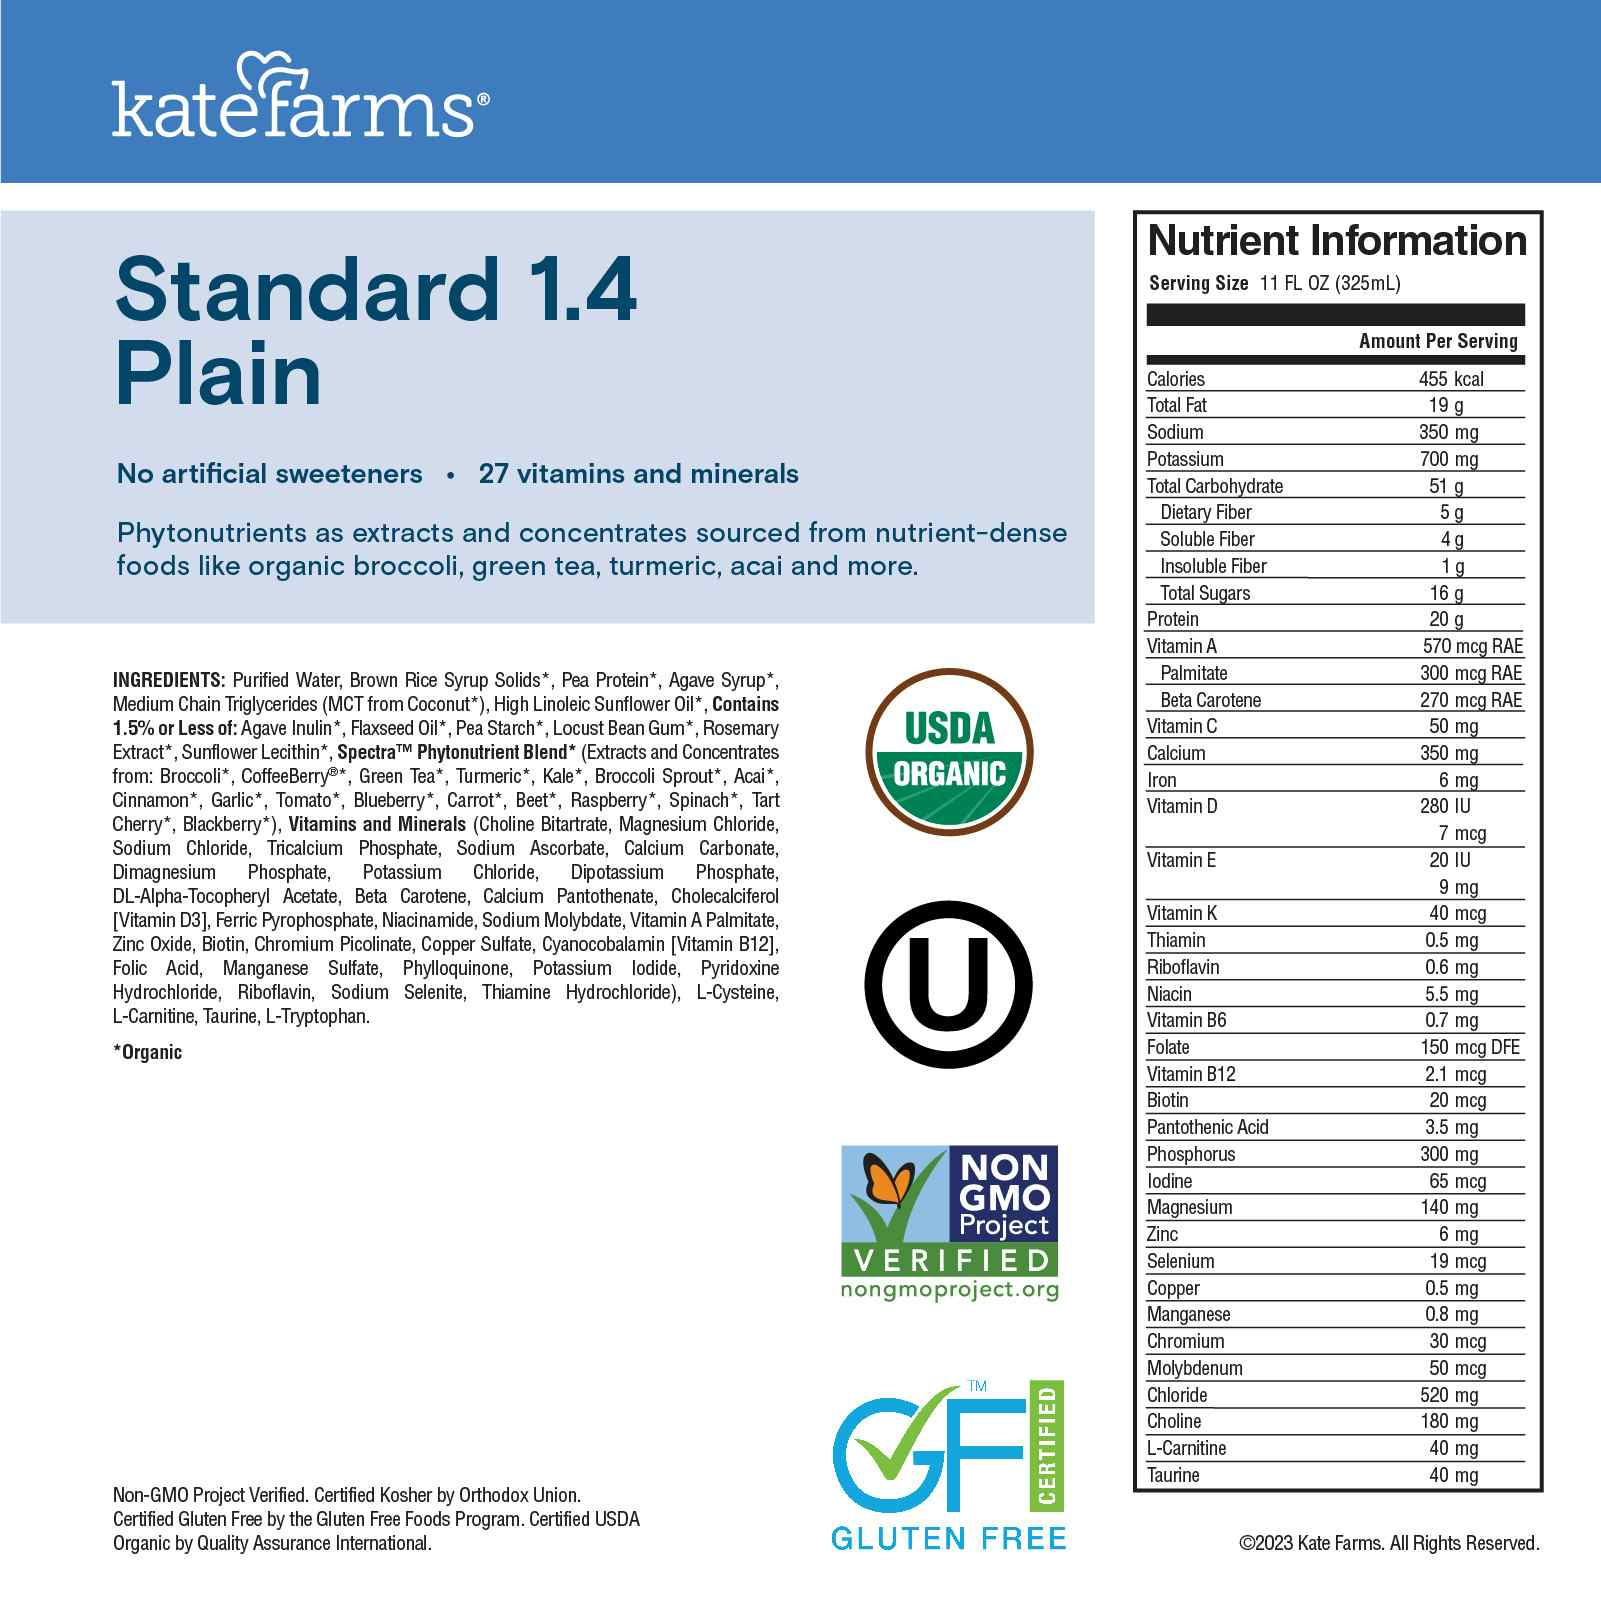 Kate Farms Standard 1.4 Sole-Source Nutrition Formula, Plain, 11 oz.